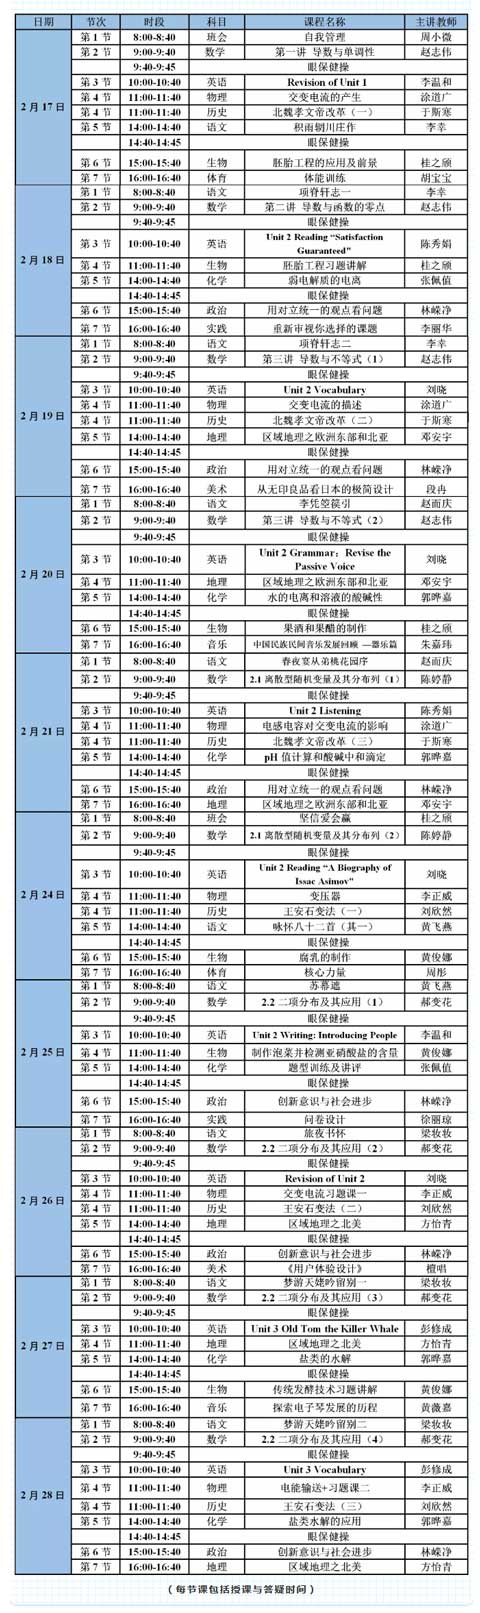 深圳中学2月17日-28日全国线上直播课程安排表 附观看方式